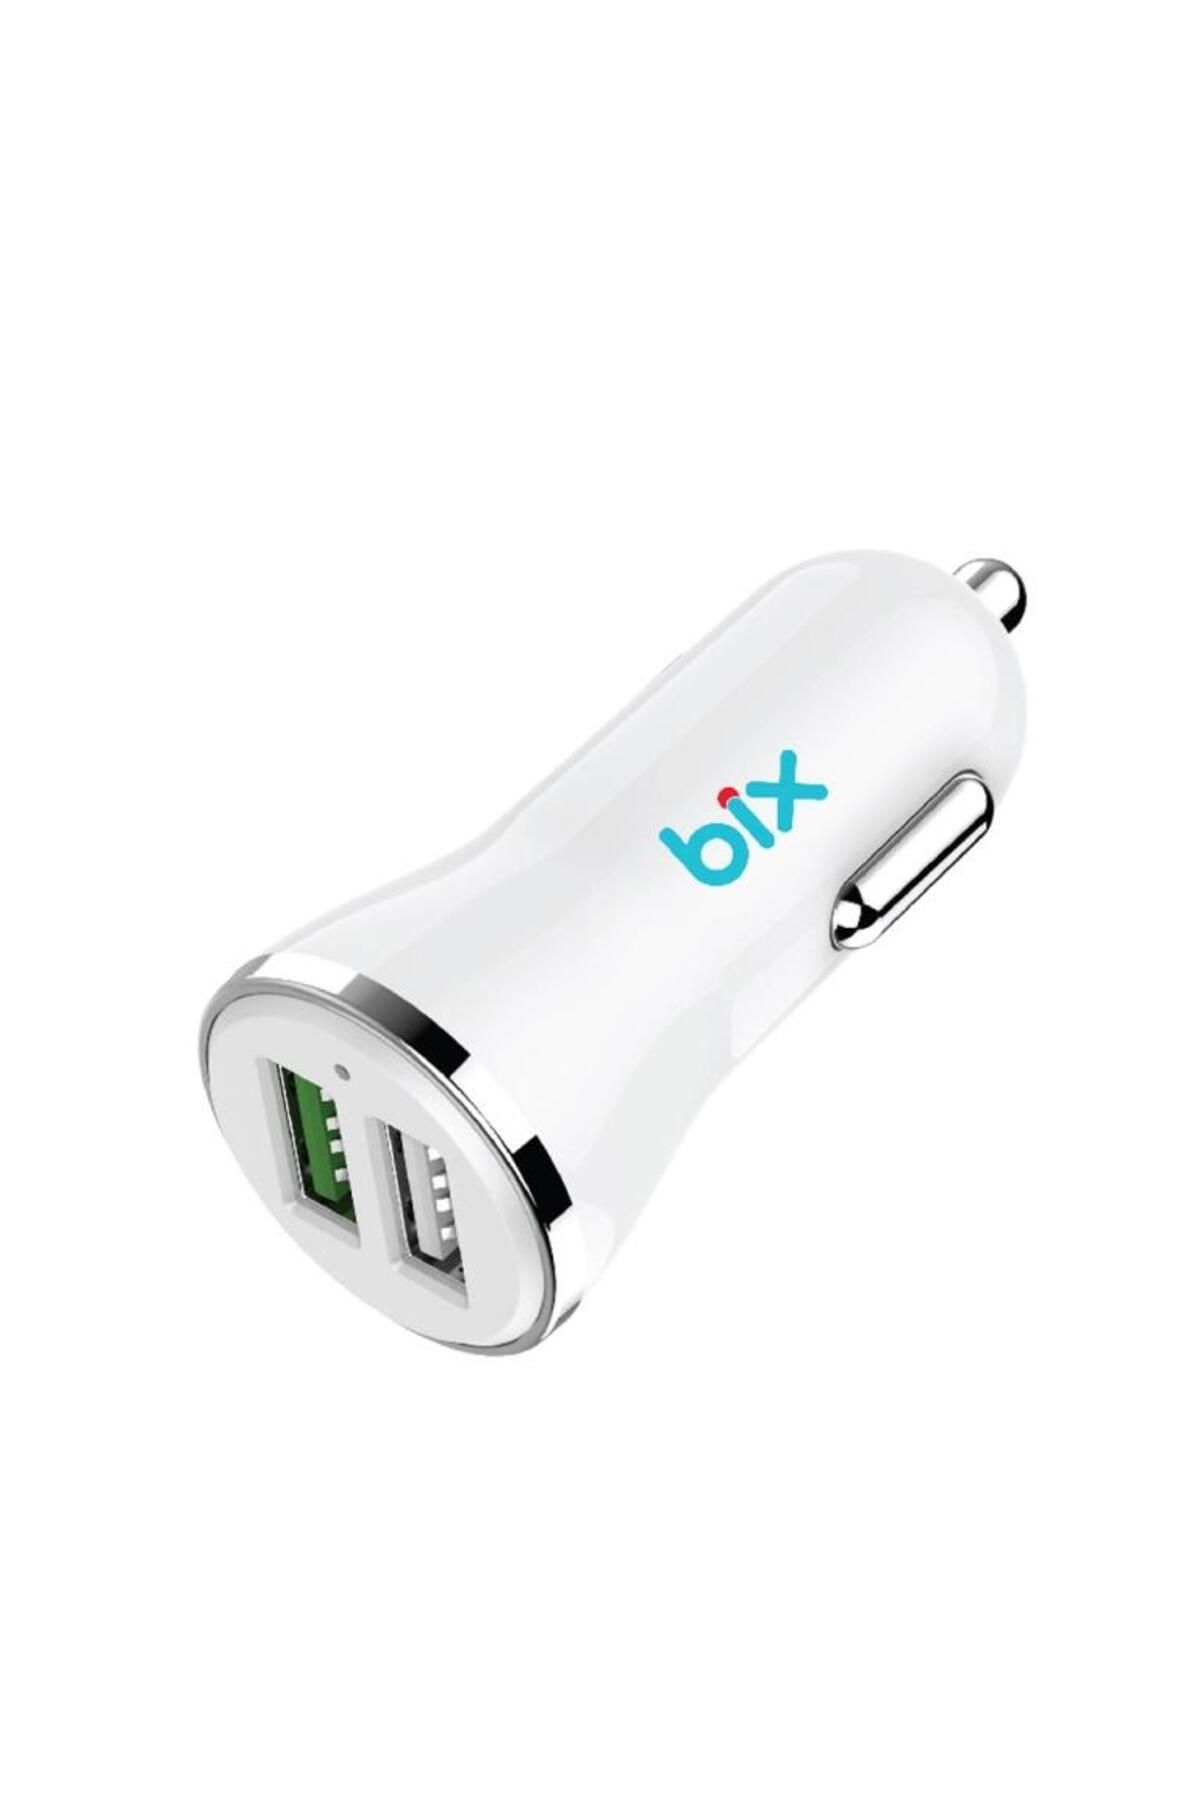 Bix Hızlı Araç Şarj Cihazı Çift Usb Çıkışlı Qc 3.0 Beyaz